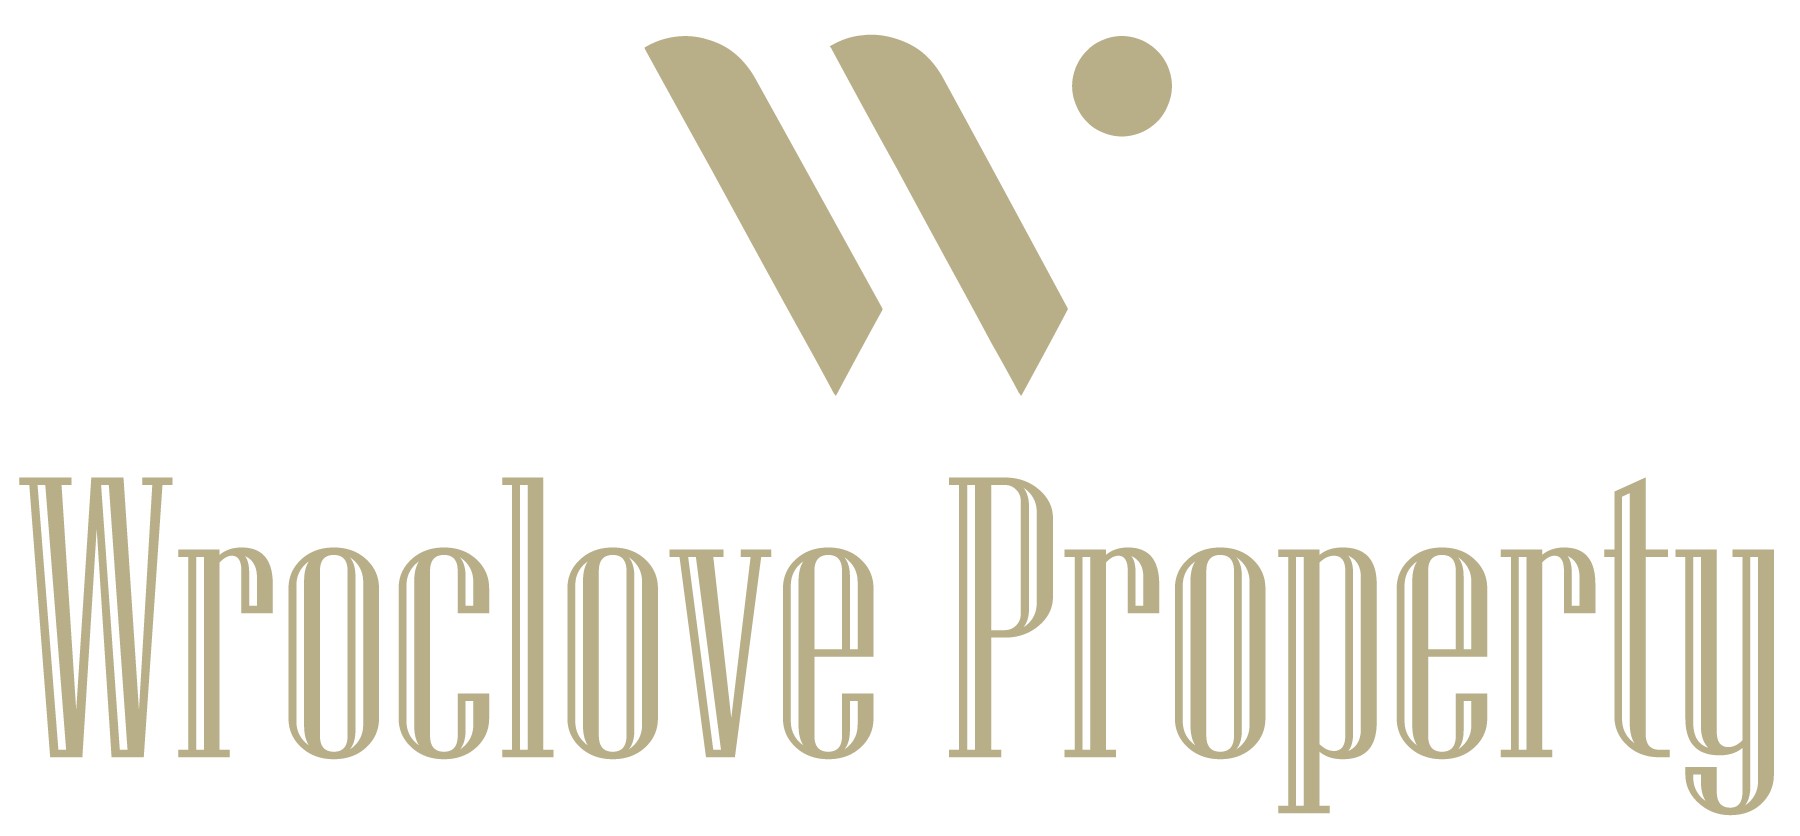 Logo Wroclove Property sp.z o.o.